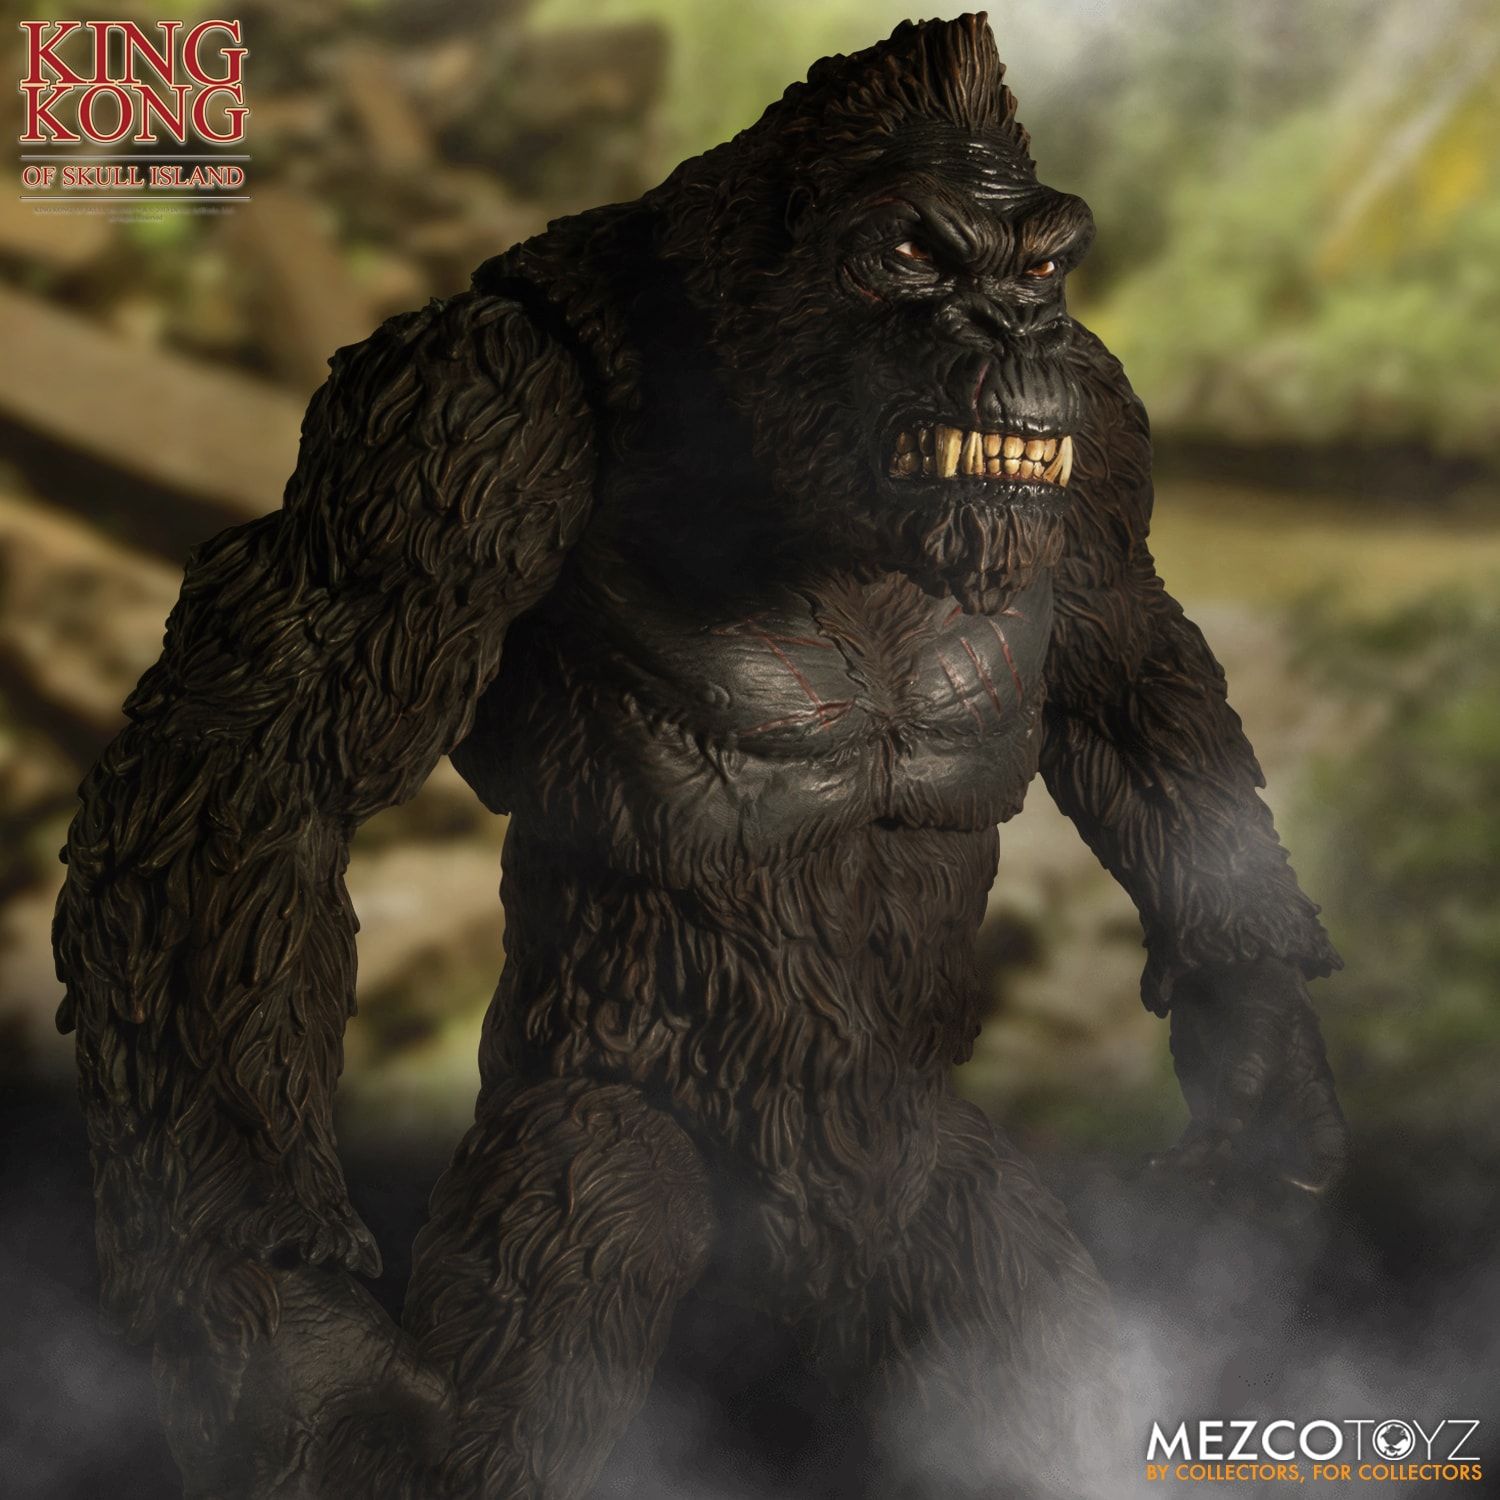 Mezco Kong 1